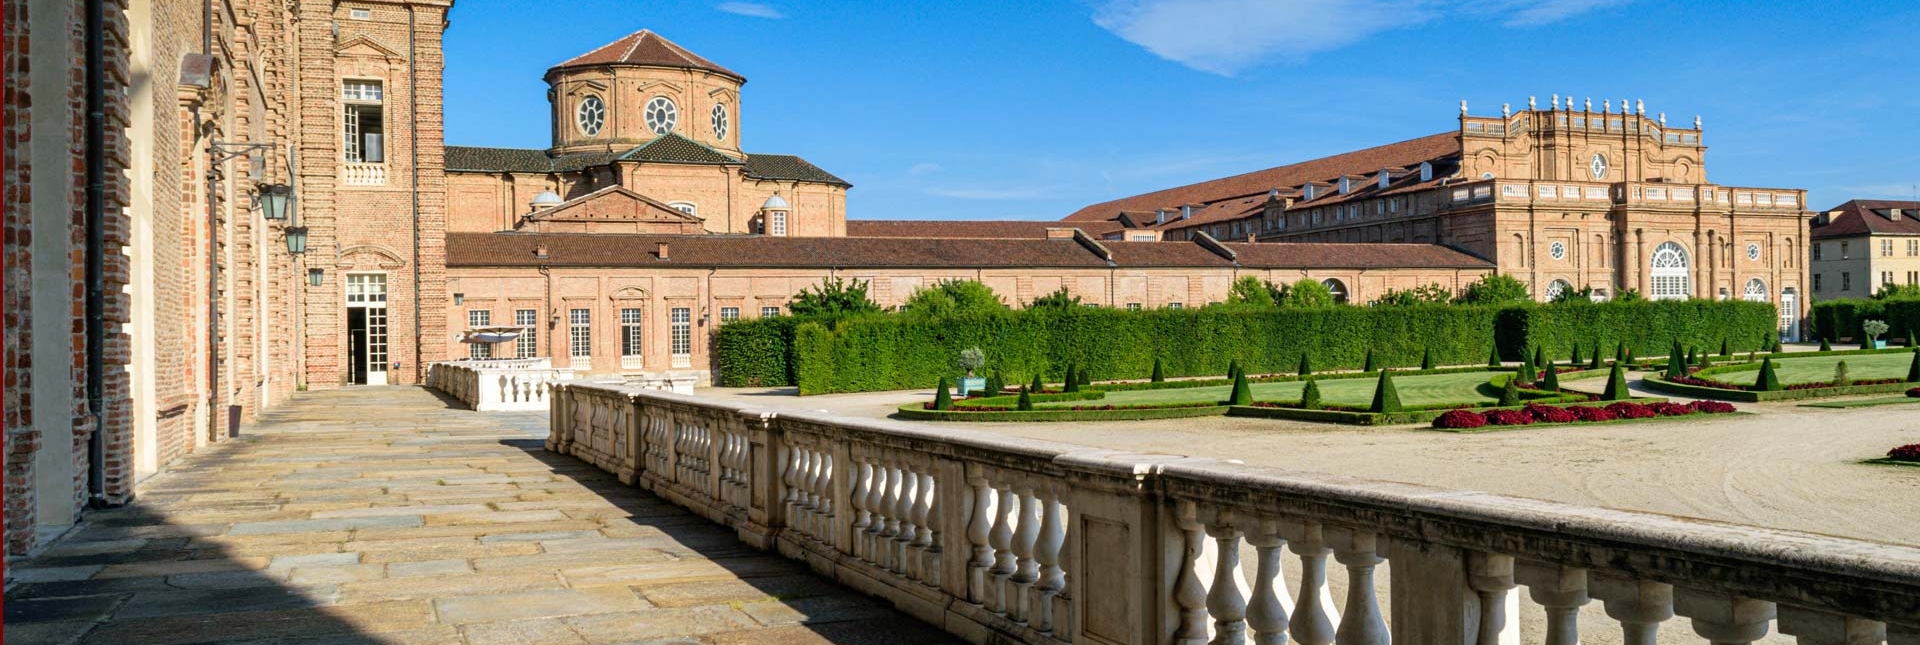 Reggia di Venaria - Royal Residence in Piedmont - Venaria Reale